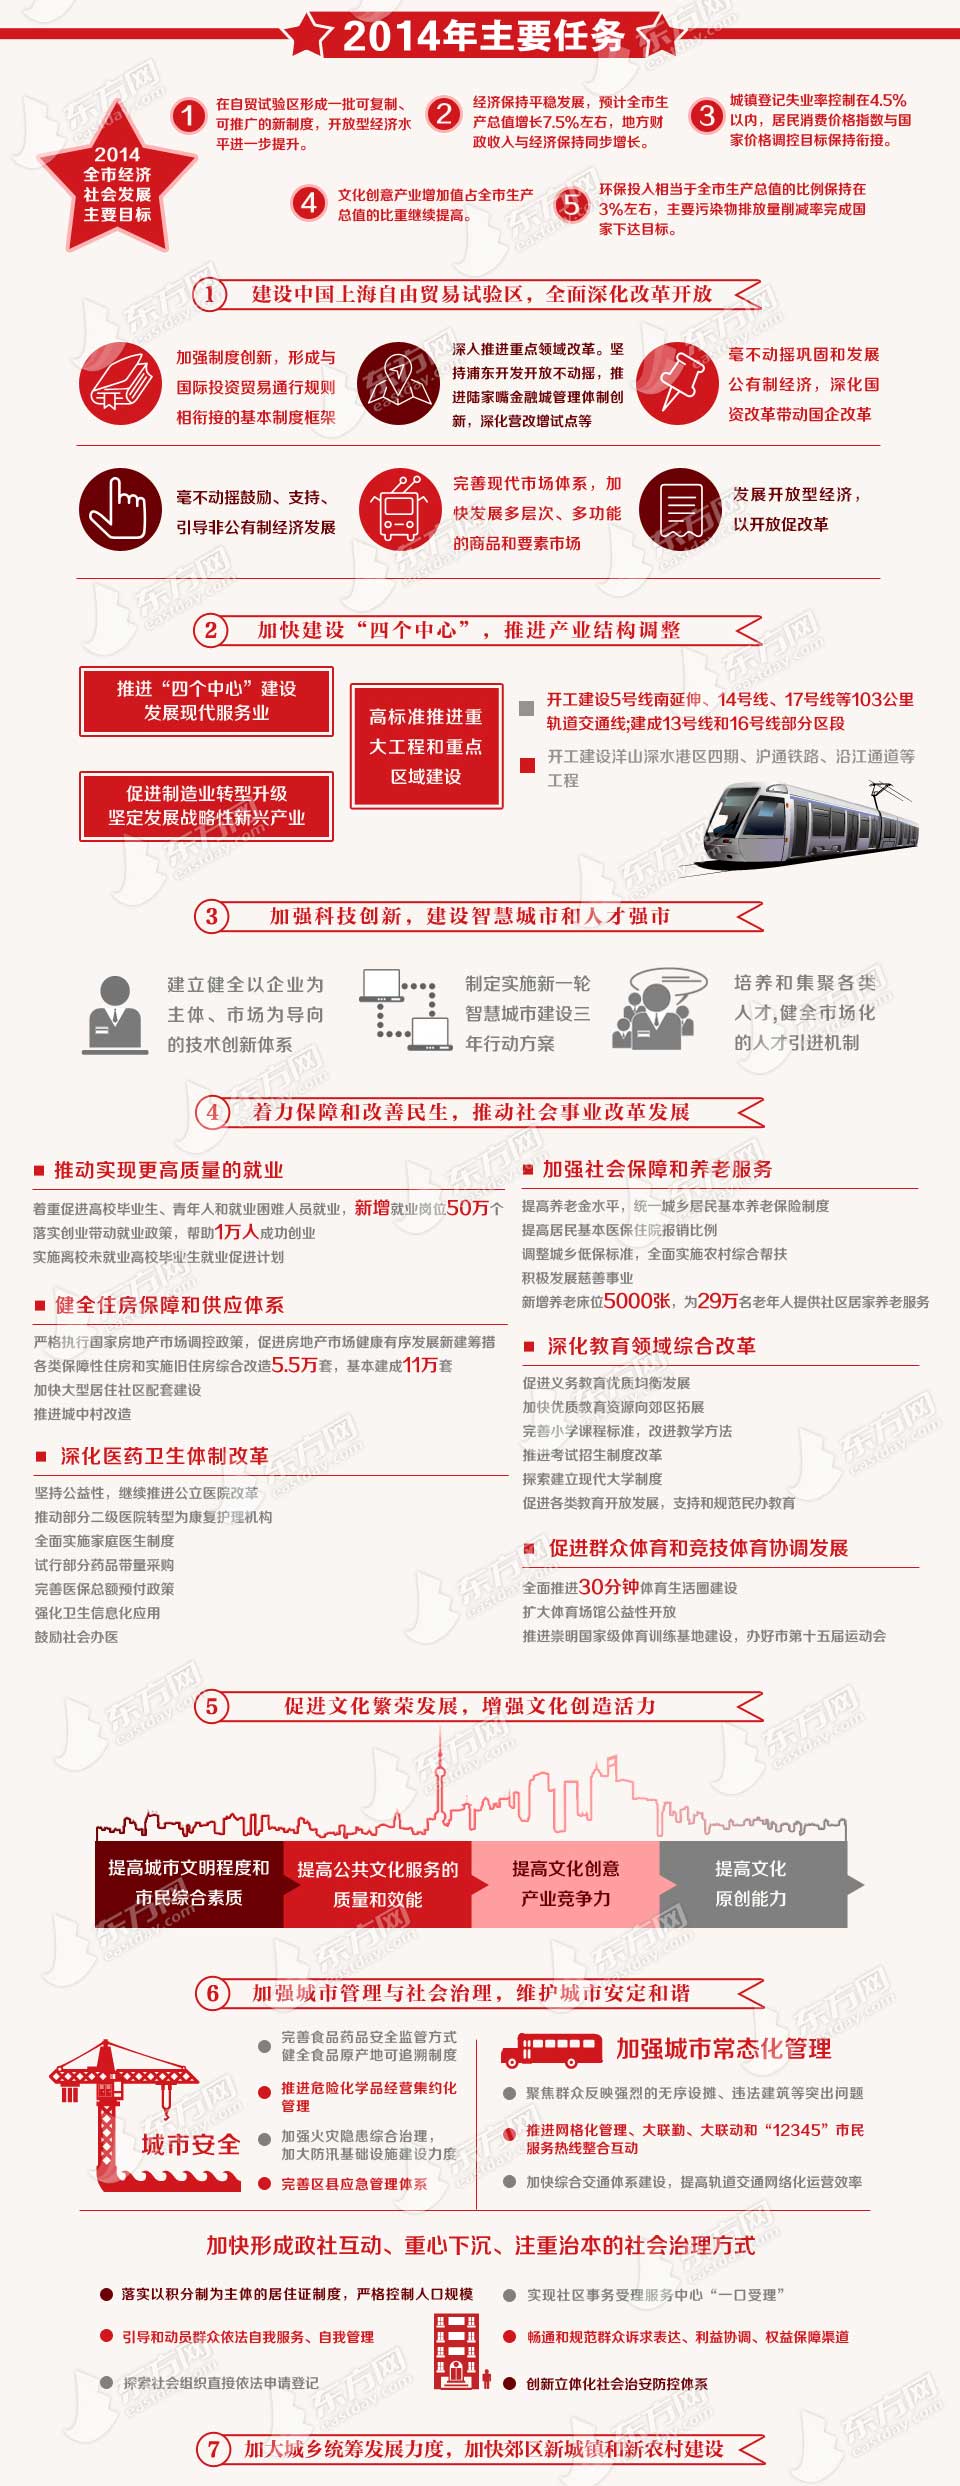 2014年上海市政府工作报告